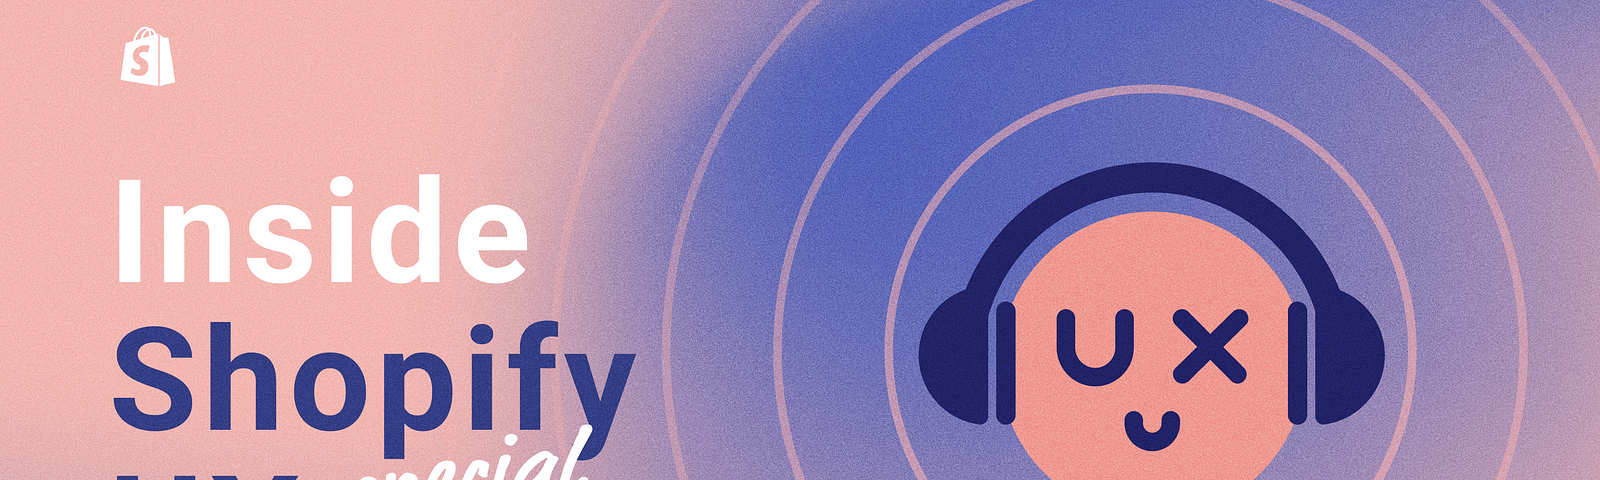 编辑插图与文字在左边:内部Shopify UX特别版。右边是Shopify UX的笑脸符号，耳机上有圆圈描绘音频。图像是粉红色和紫色的。